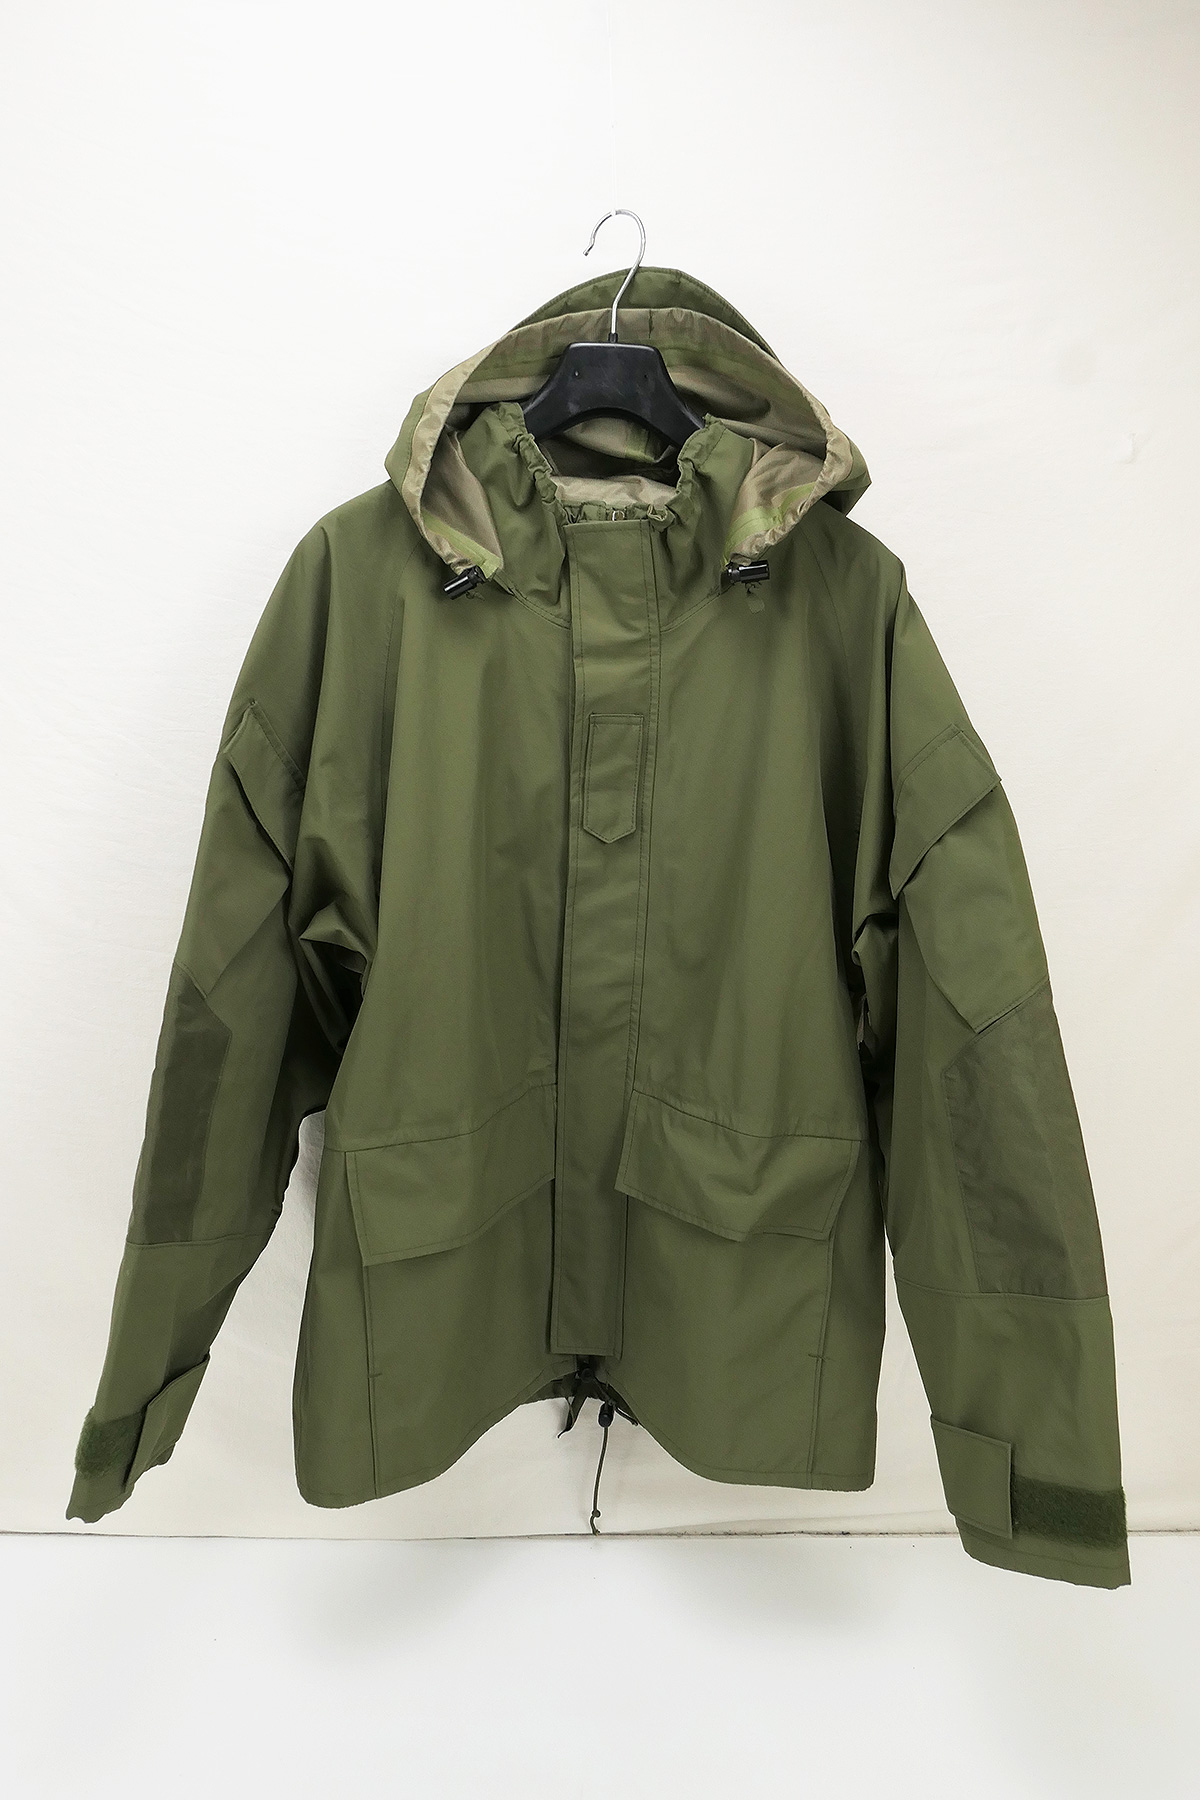 US Army Wet Weather Jacket Rain Jacket All Purpose olive Medium | Lomax ...